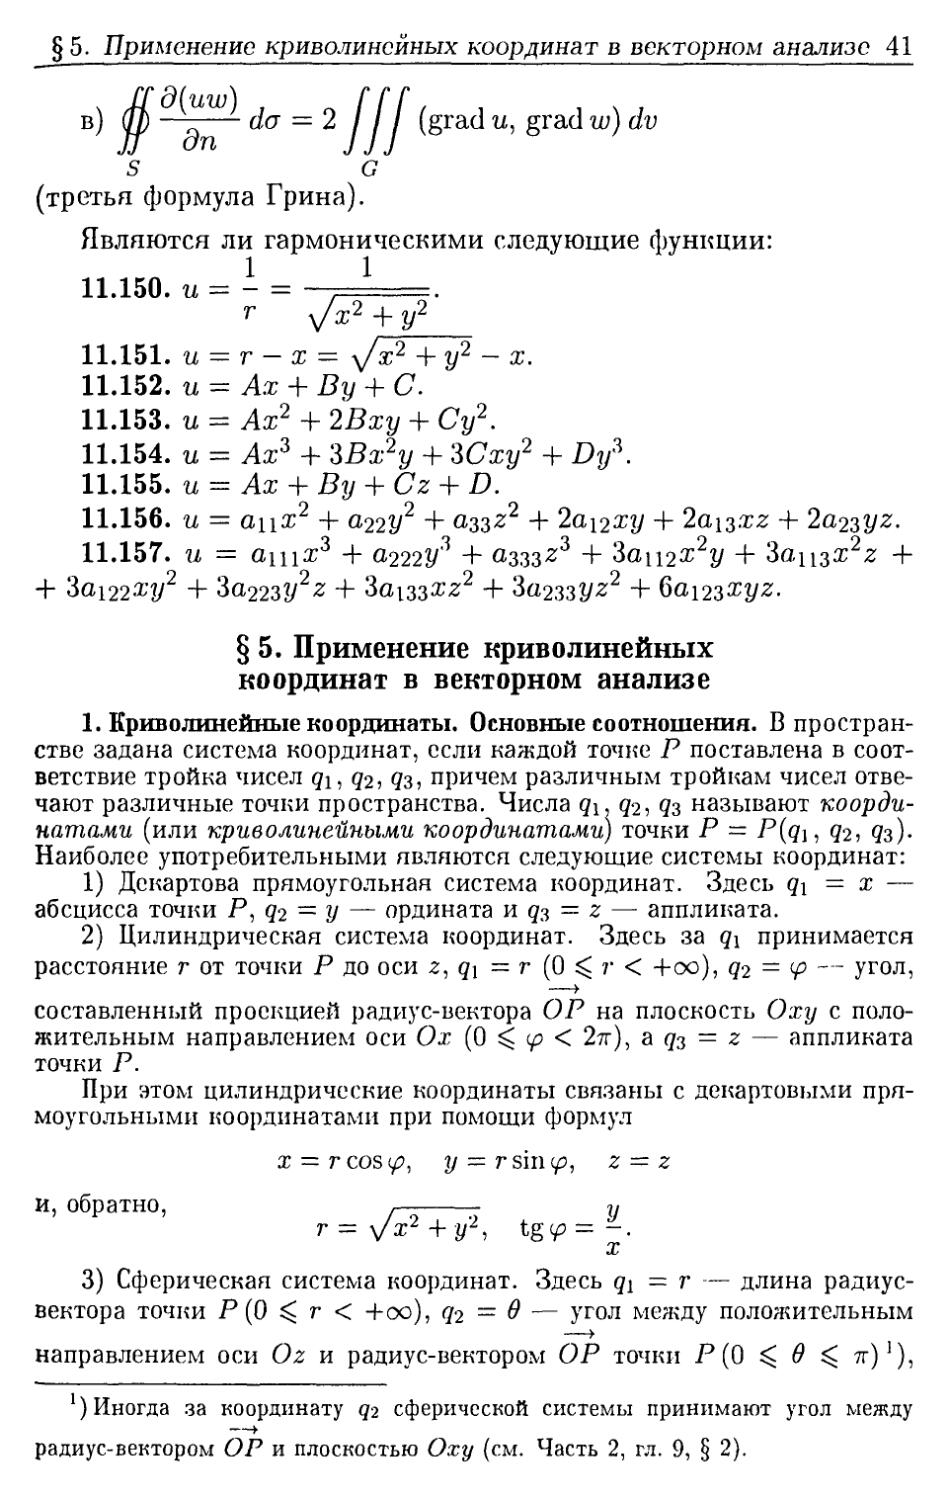 §5. Применение криволинейных координат в векторном анализе